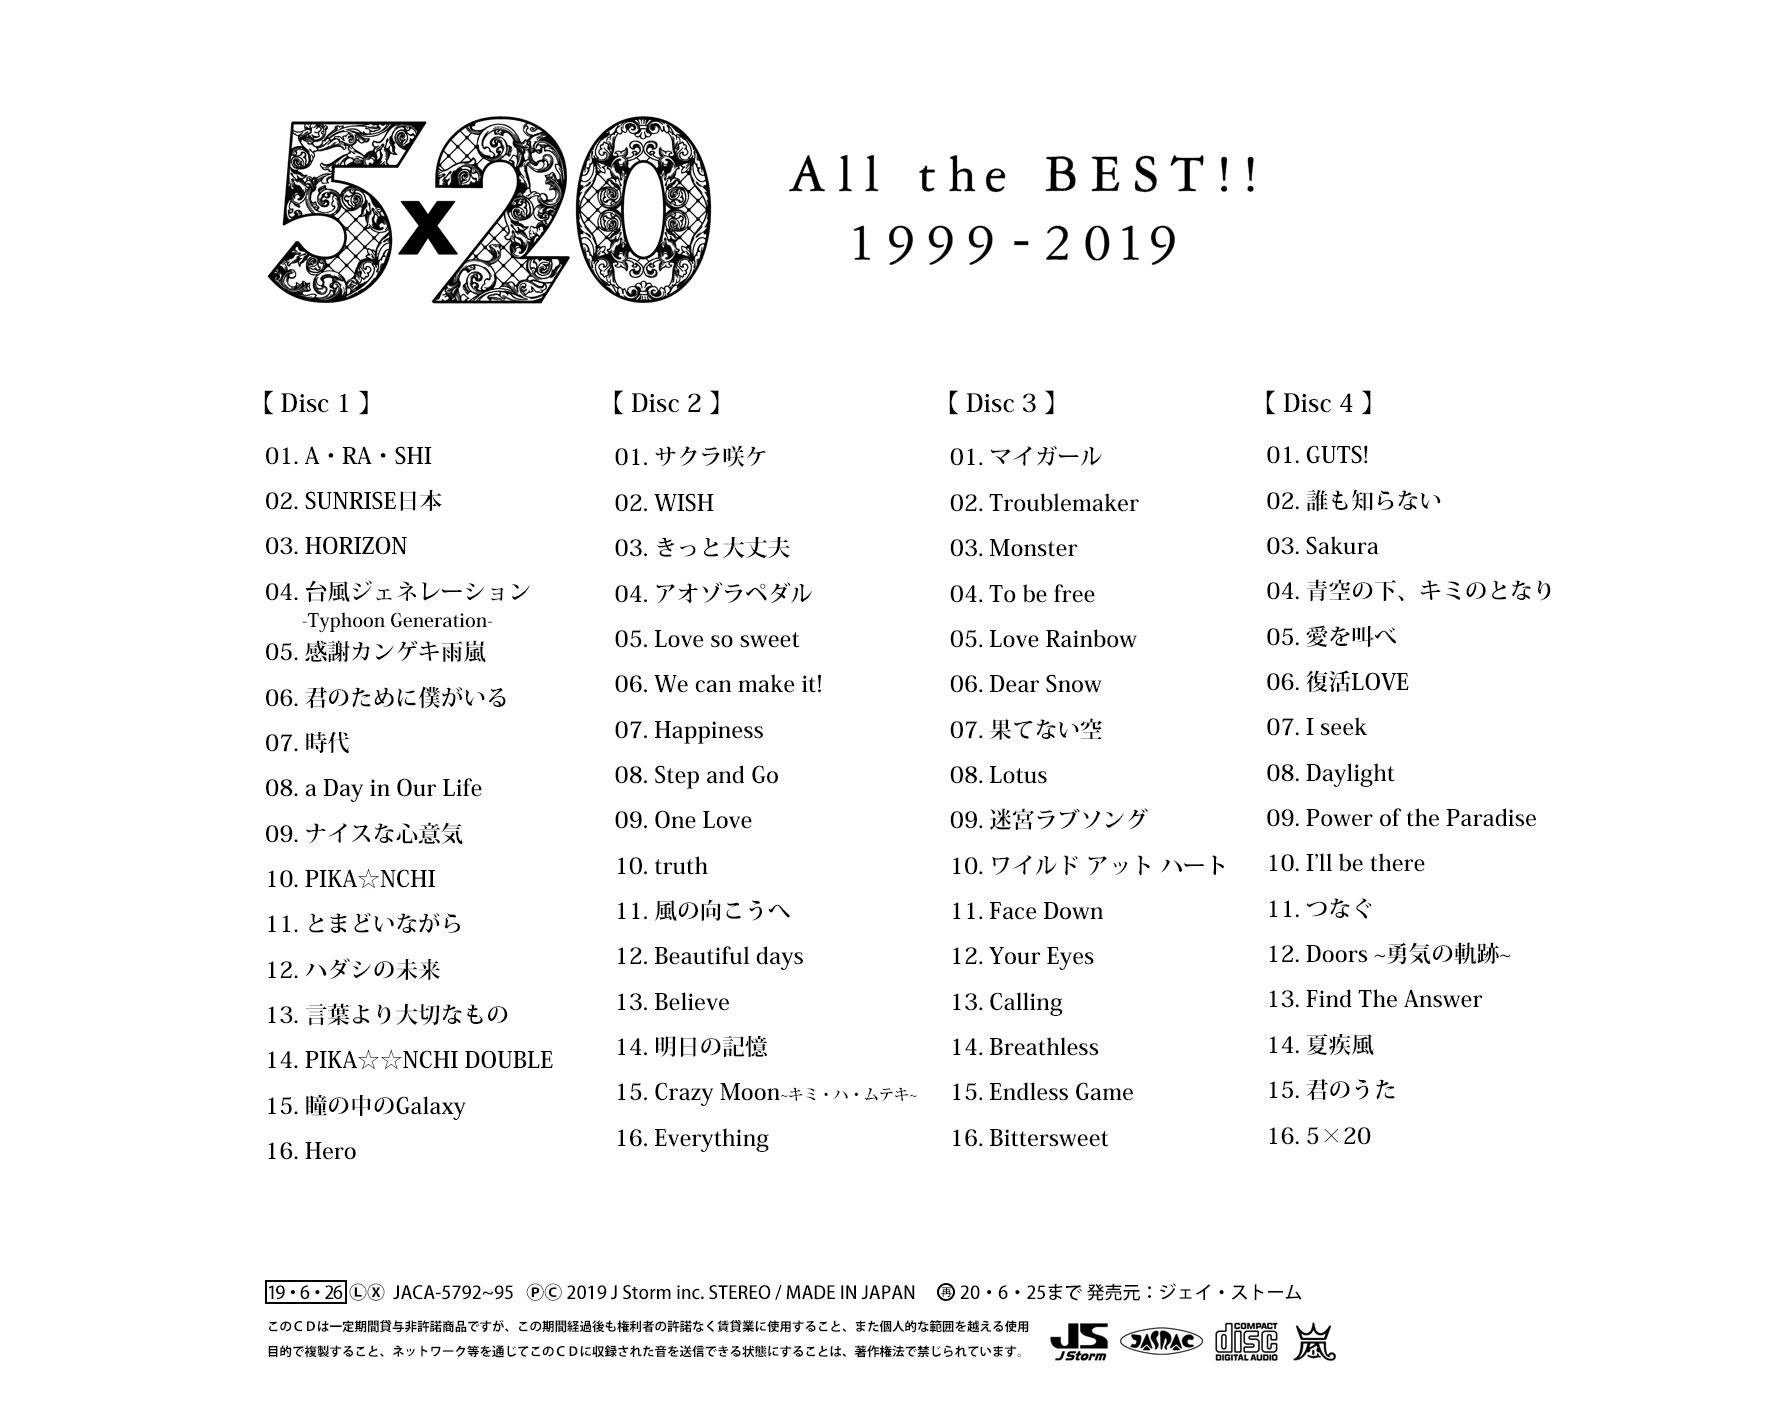 嵐 ベストアルバム 5×20 All the BEST 1999-2019 www.krzysztofbialy.com